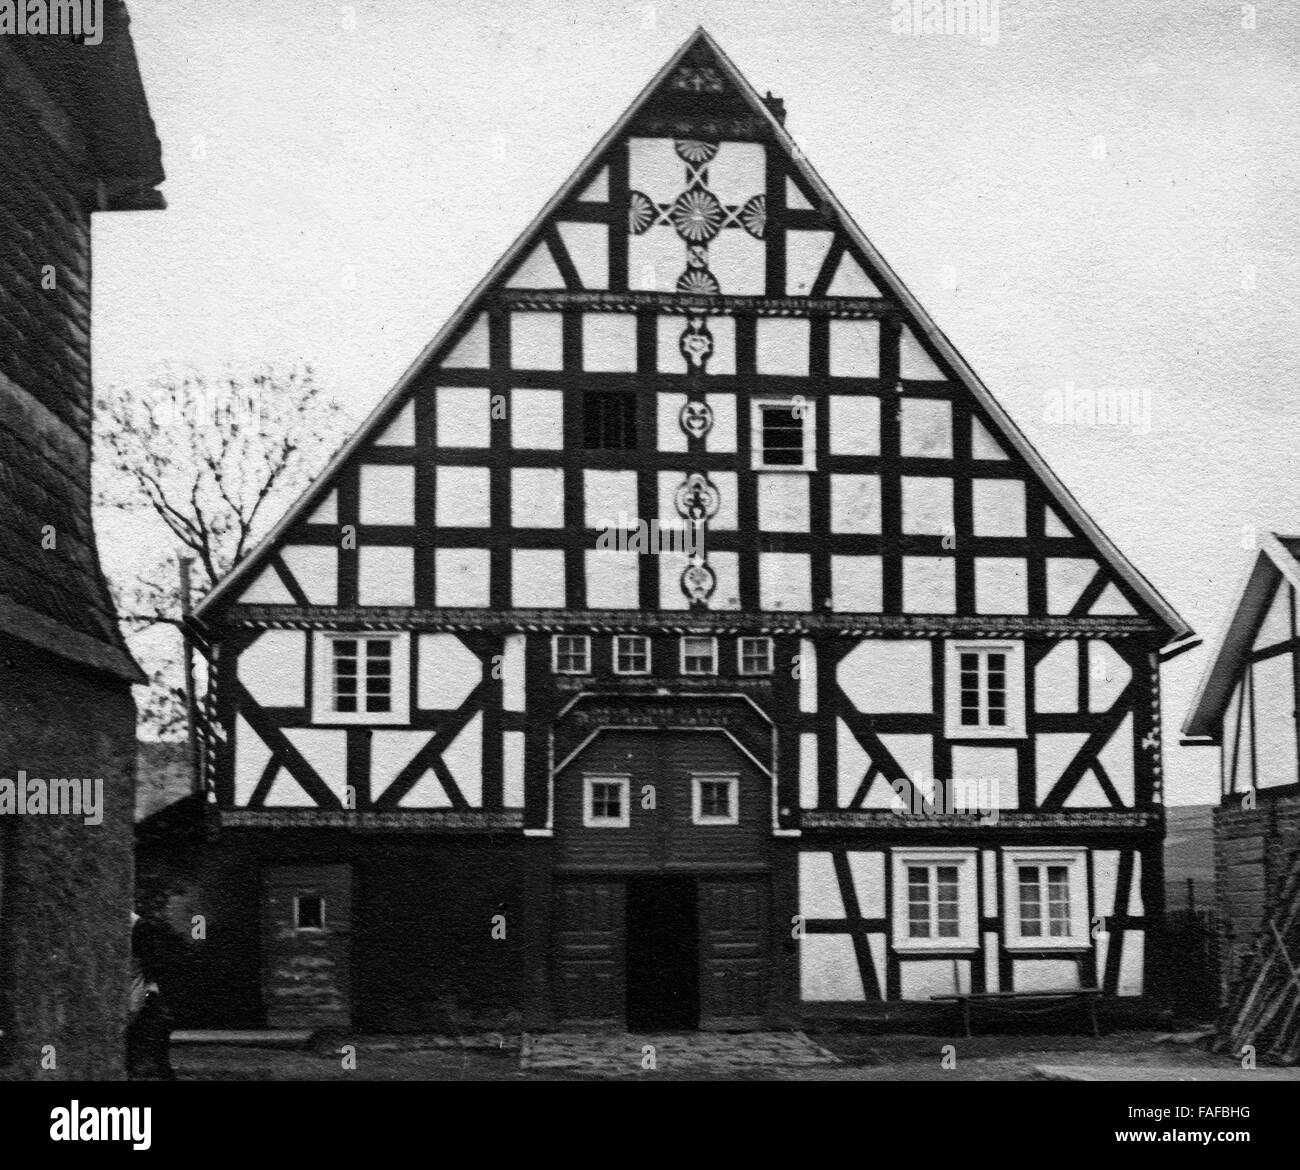 Historisches Fachwerkhaus in Kirchhundem Bei Olpe, Deutschland 1930er Jahr. Historisches Fachwerkhaus in Kirchhundem in der Nähe von Olpe, Deutschland der 1930er Jahre. Stockfoto